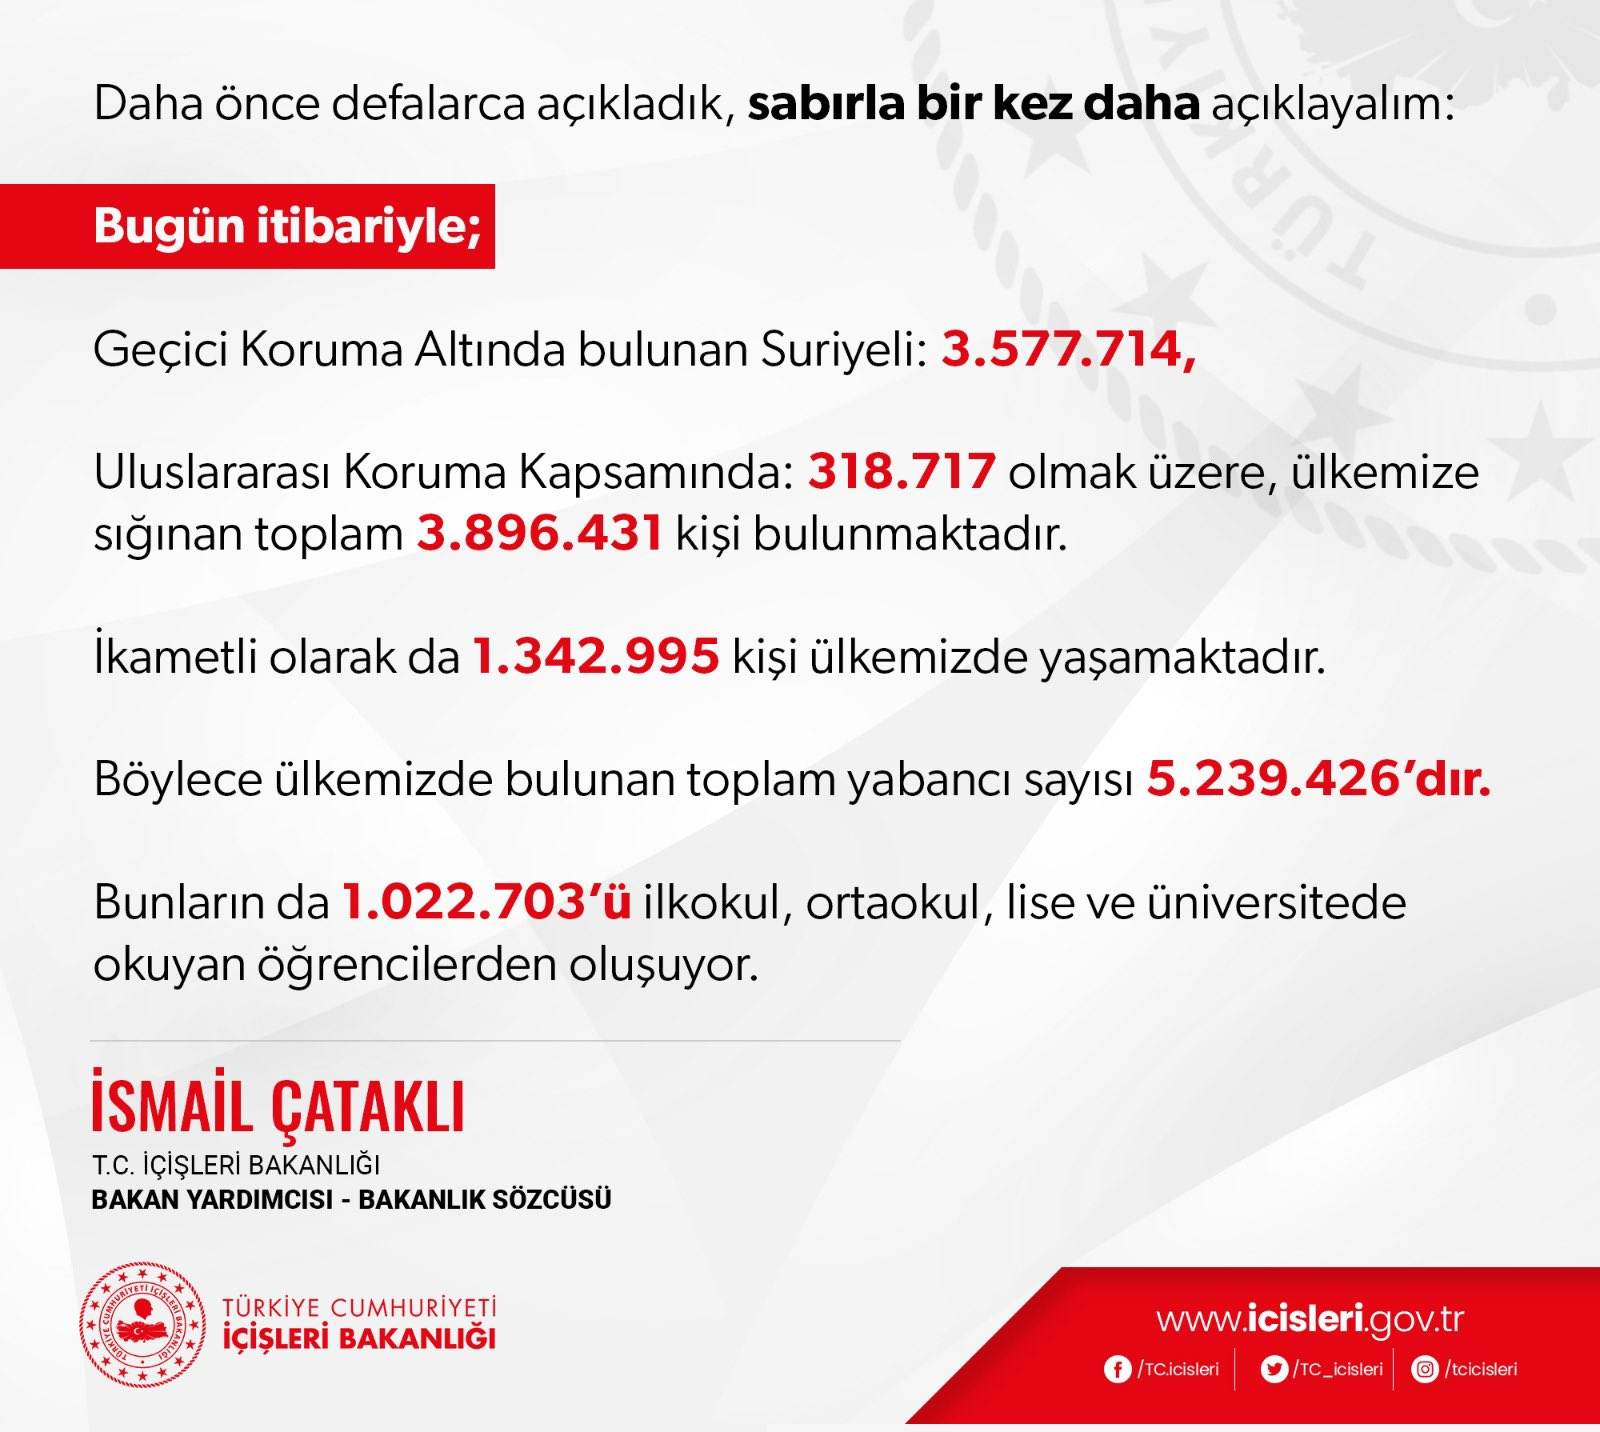 İçişleri Bakanlığı Türkiye